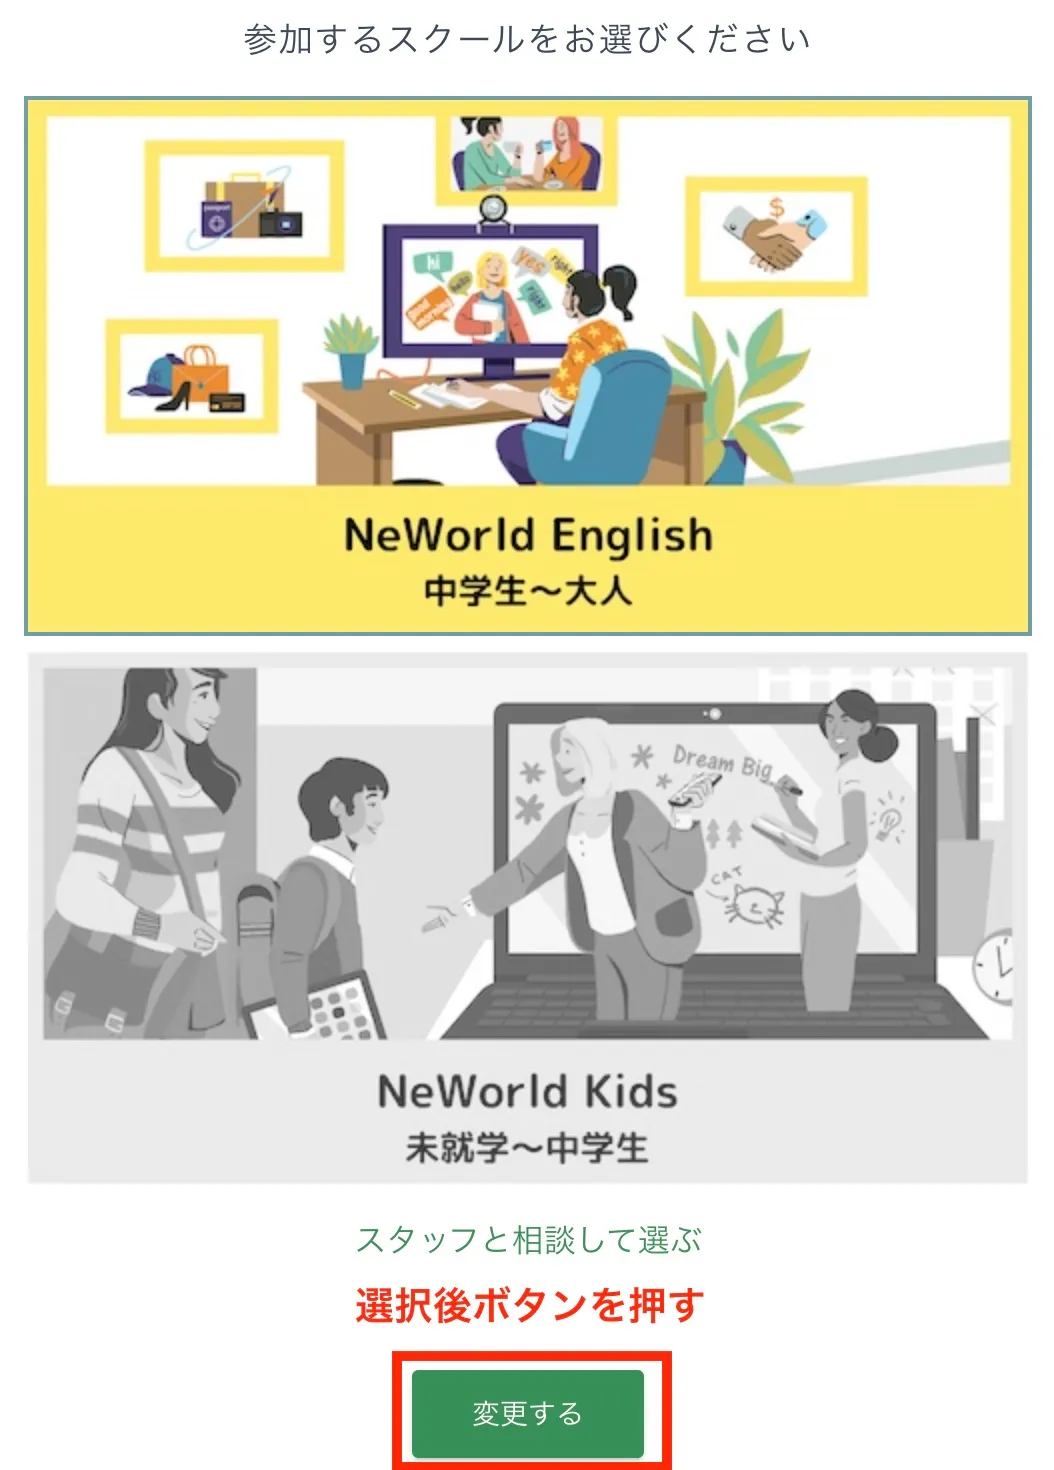 子供英会話のNeWorld Kidsと一般向けのNeWorld Englishはいつでも切り替えが可能です。大人も子供も同じアカウントで学習を継続できます。